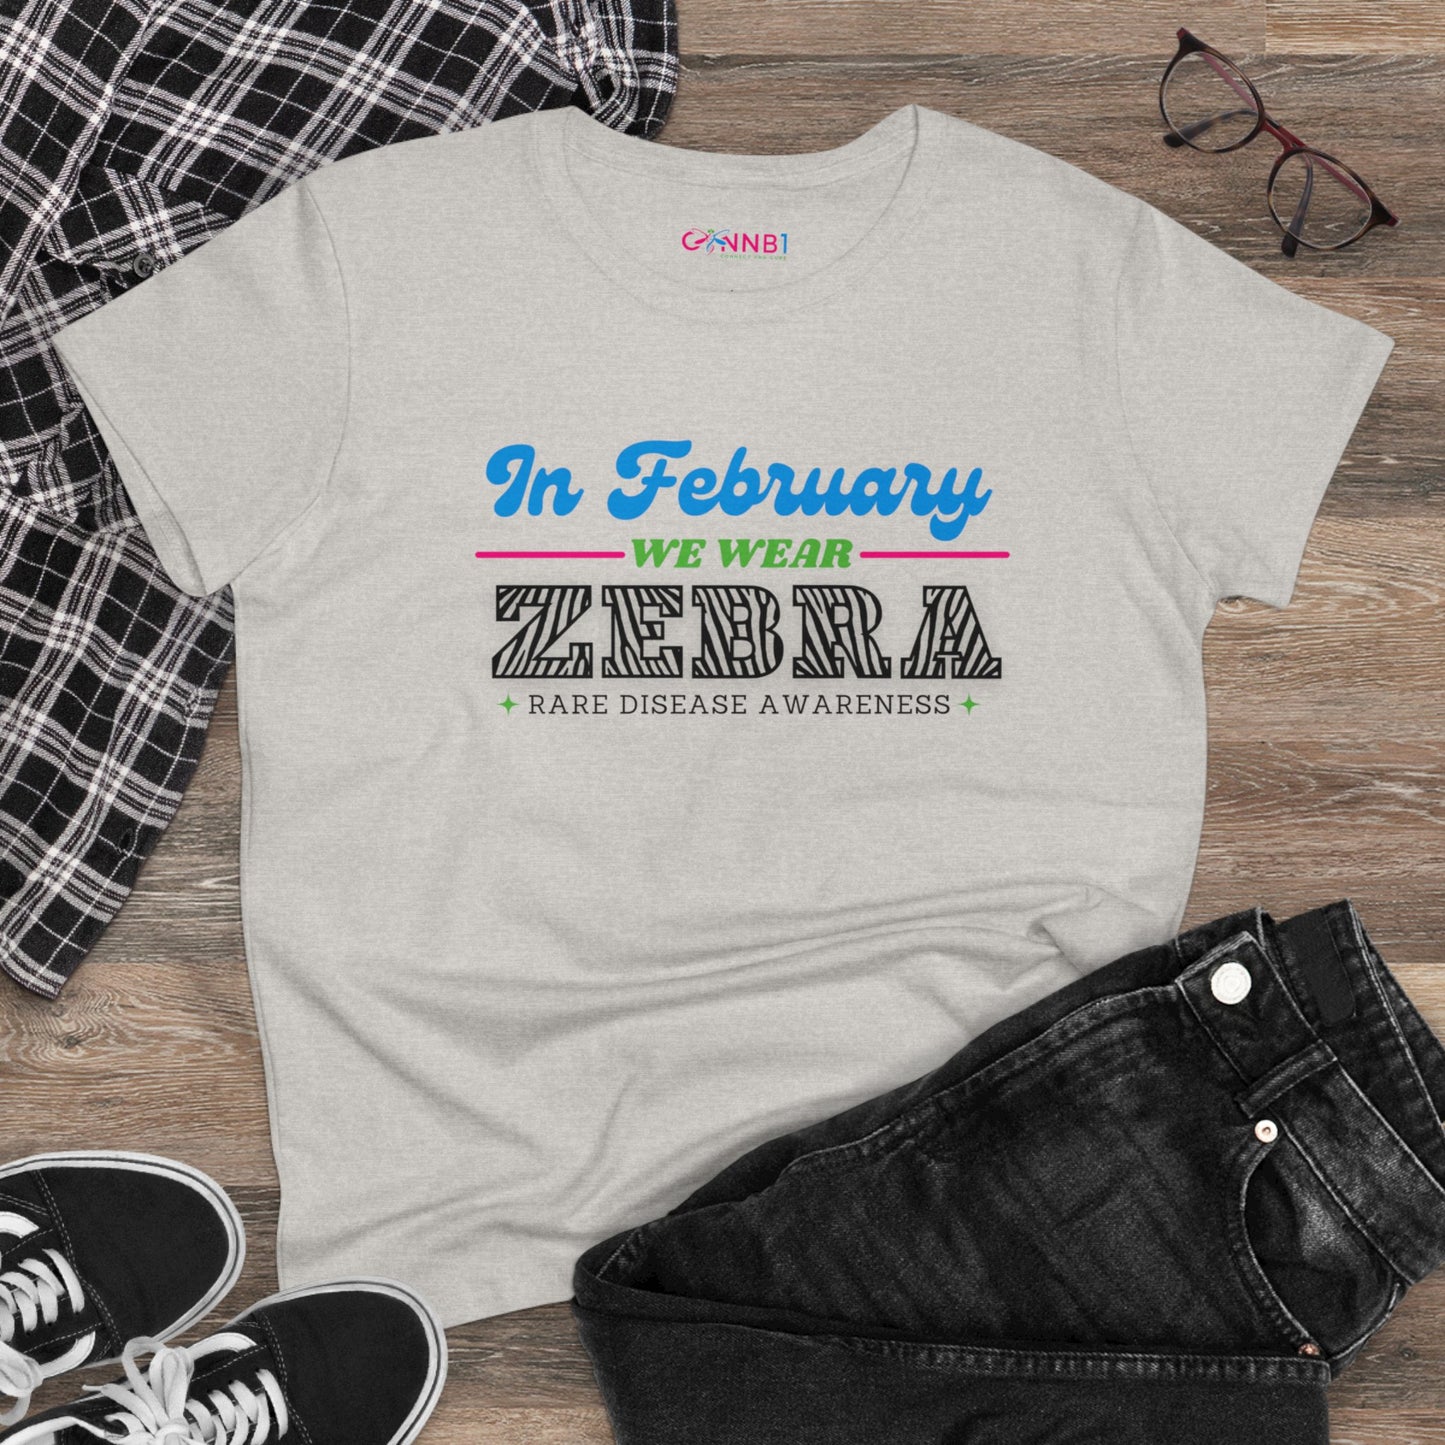 In February -we wear- ZEBRA, Women's Midweight Cotton Tee